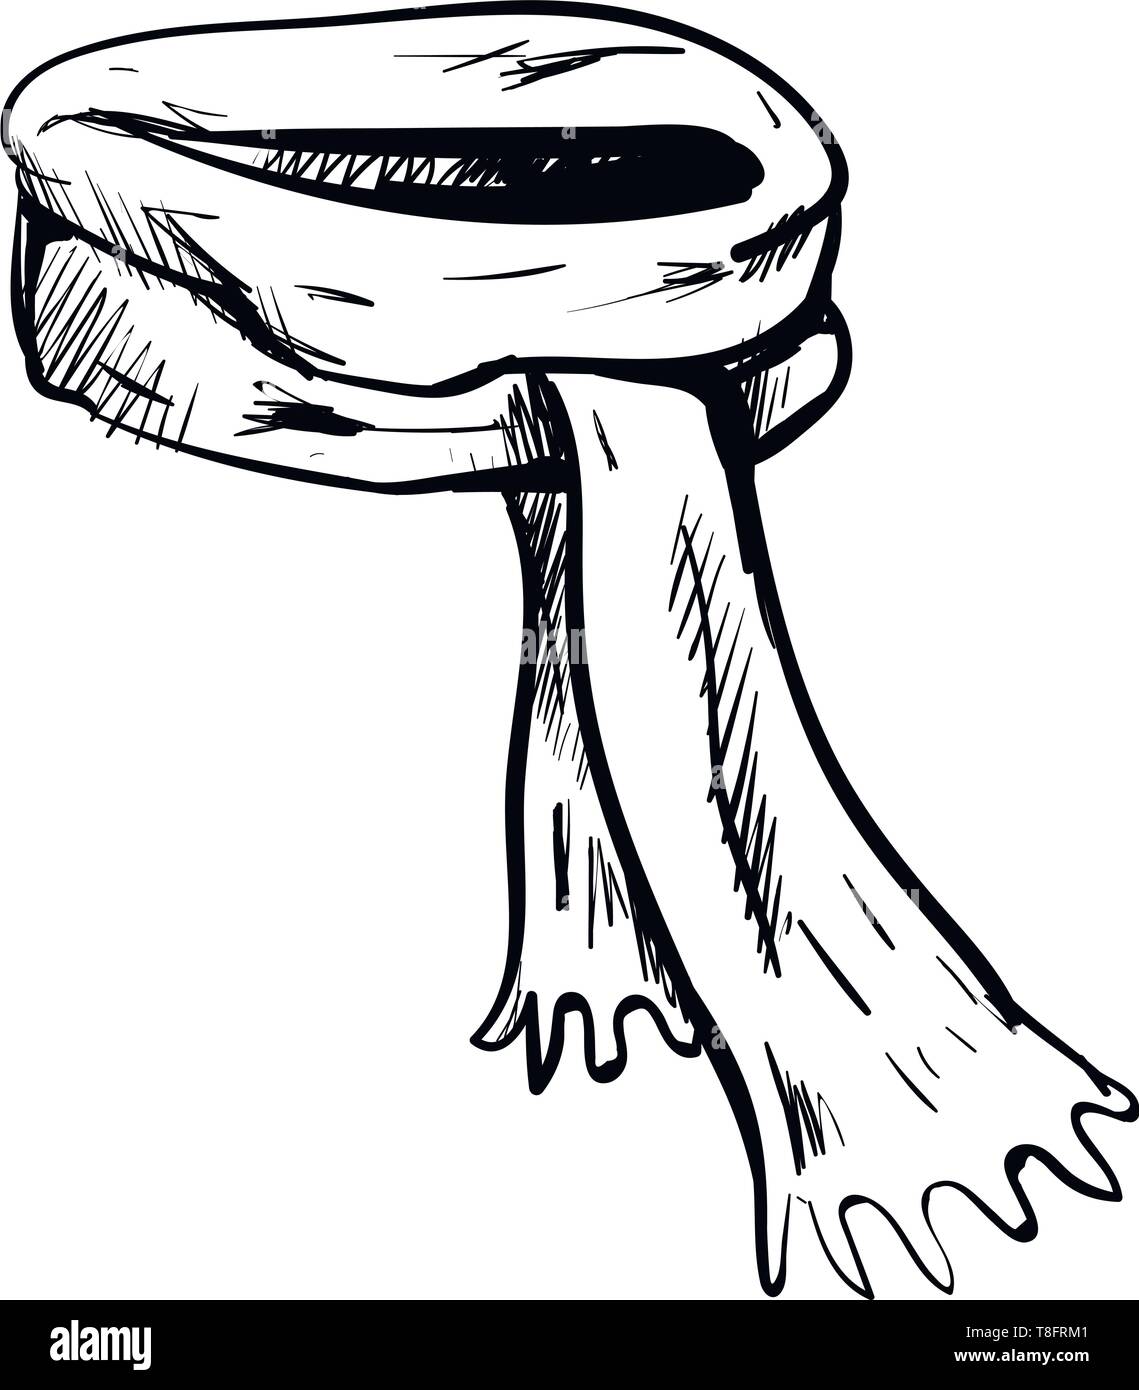 Ein langer Schal Skizze in Schwarz und Weiß mit kurzen Fäden an den Enden  perfekt für den Winter zu warm, Vektor halten gestrickt, Farbe drawin  Stock-Vektorgrafik - Alamy